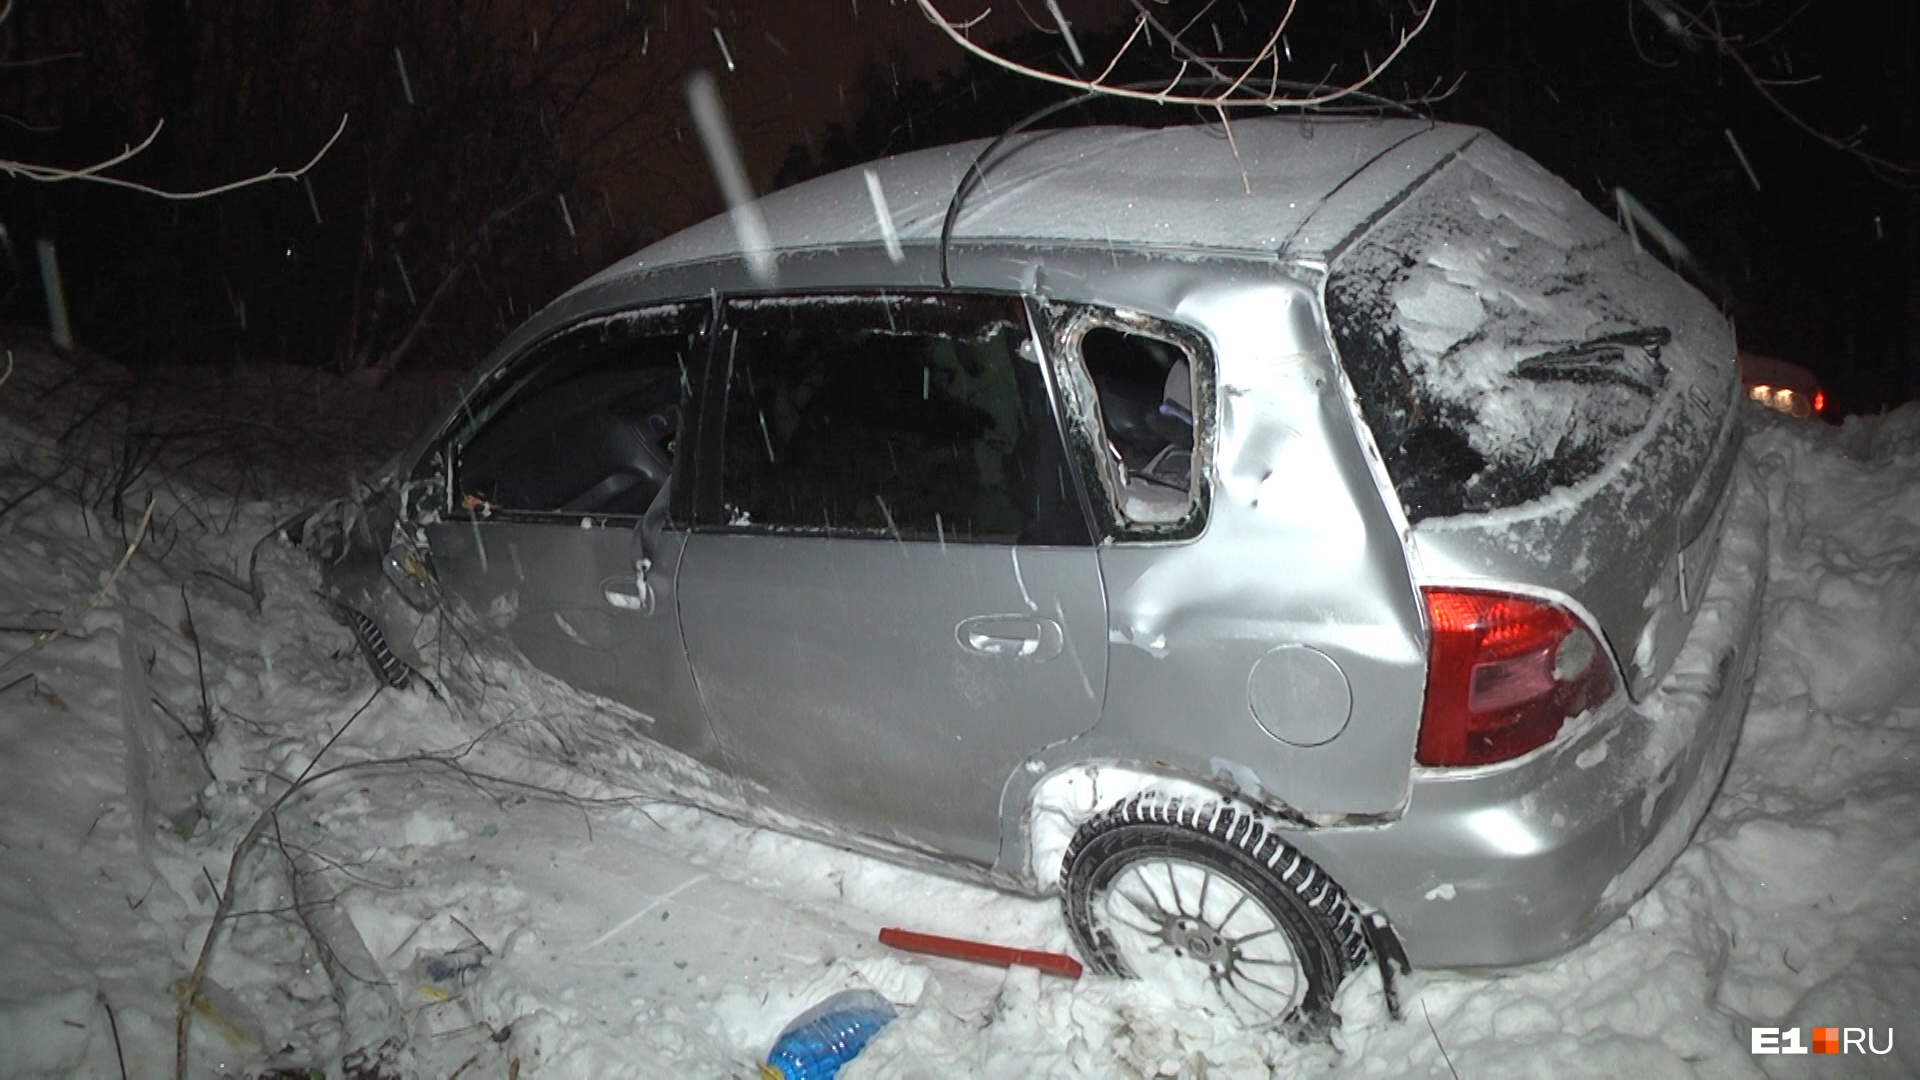 В Екатеринбурге Honda вылетела в кювет на заснеженной дороге, пострадал пассажир